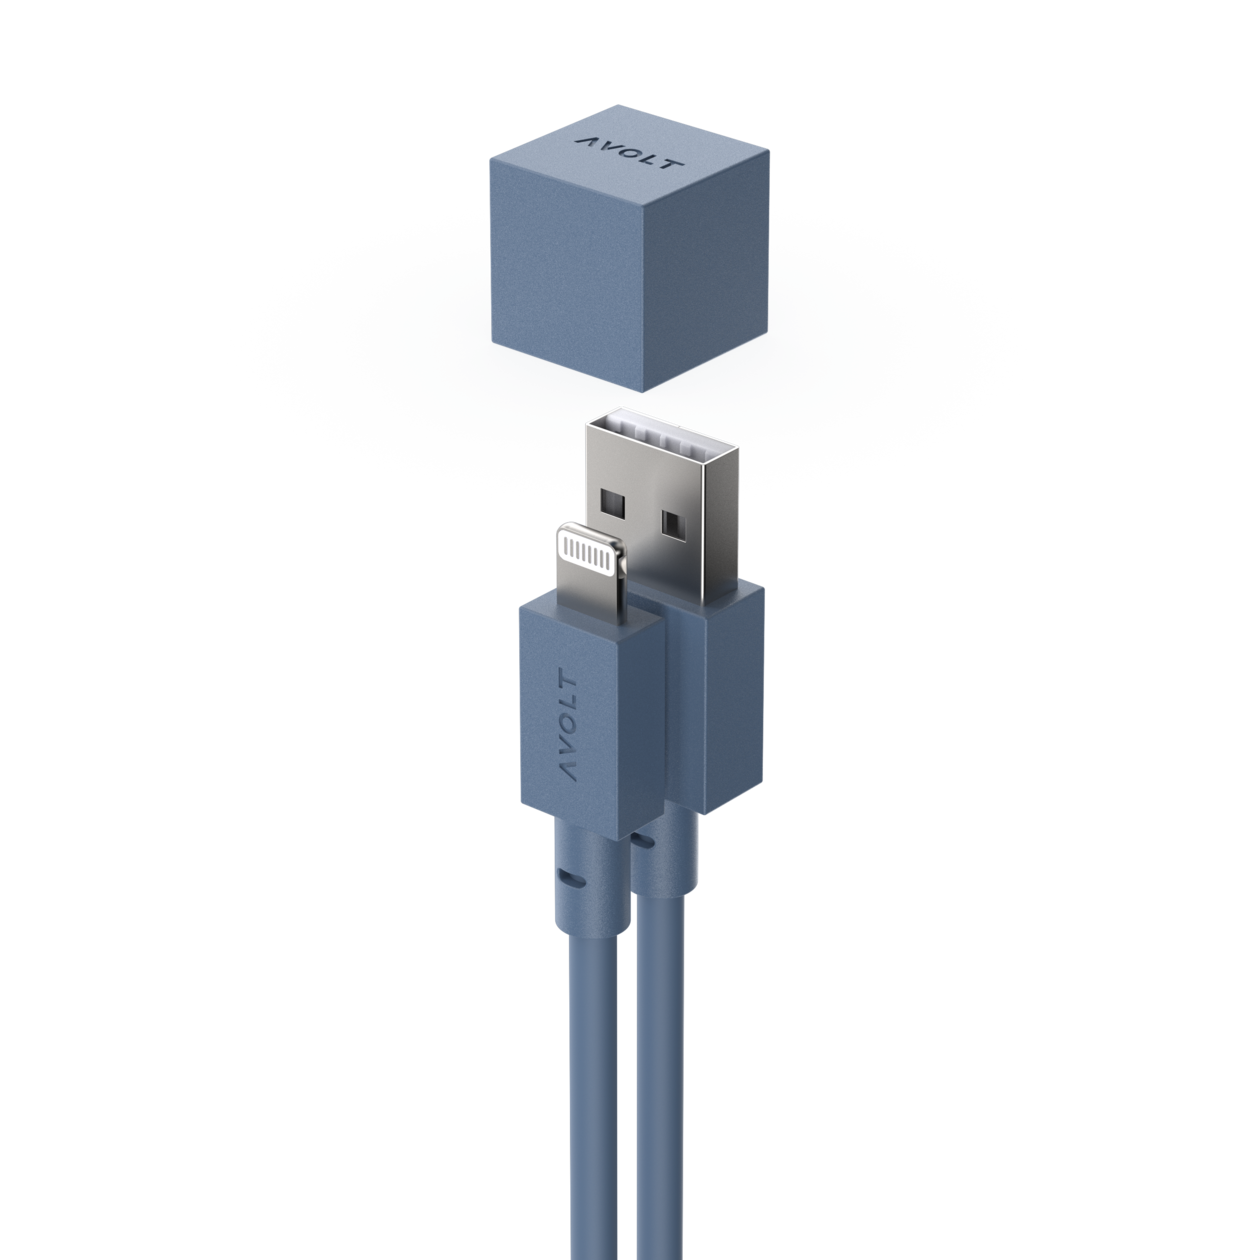 Cablu de încărcare Cable 1 USB-A to Apple lightning, Culoare Ocean Blue - Avolt